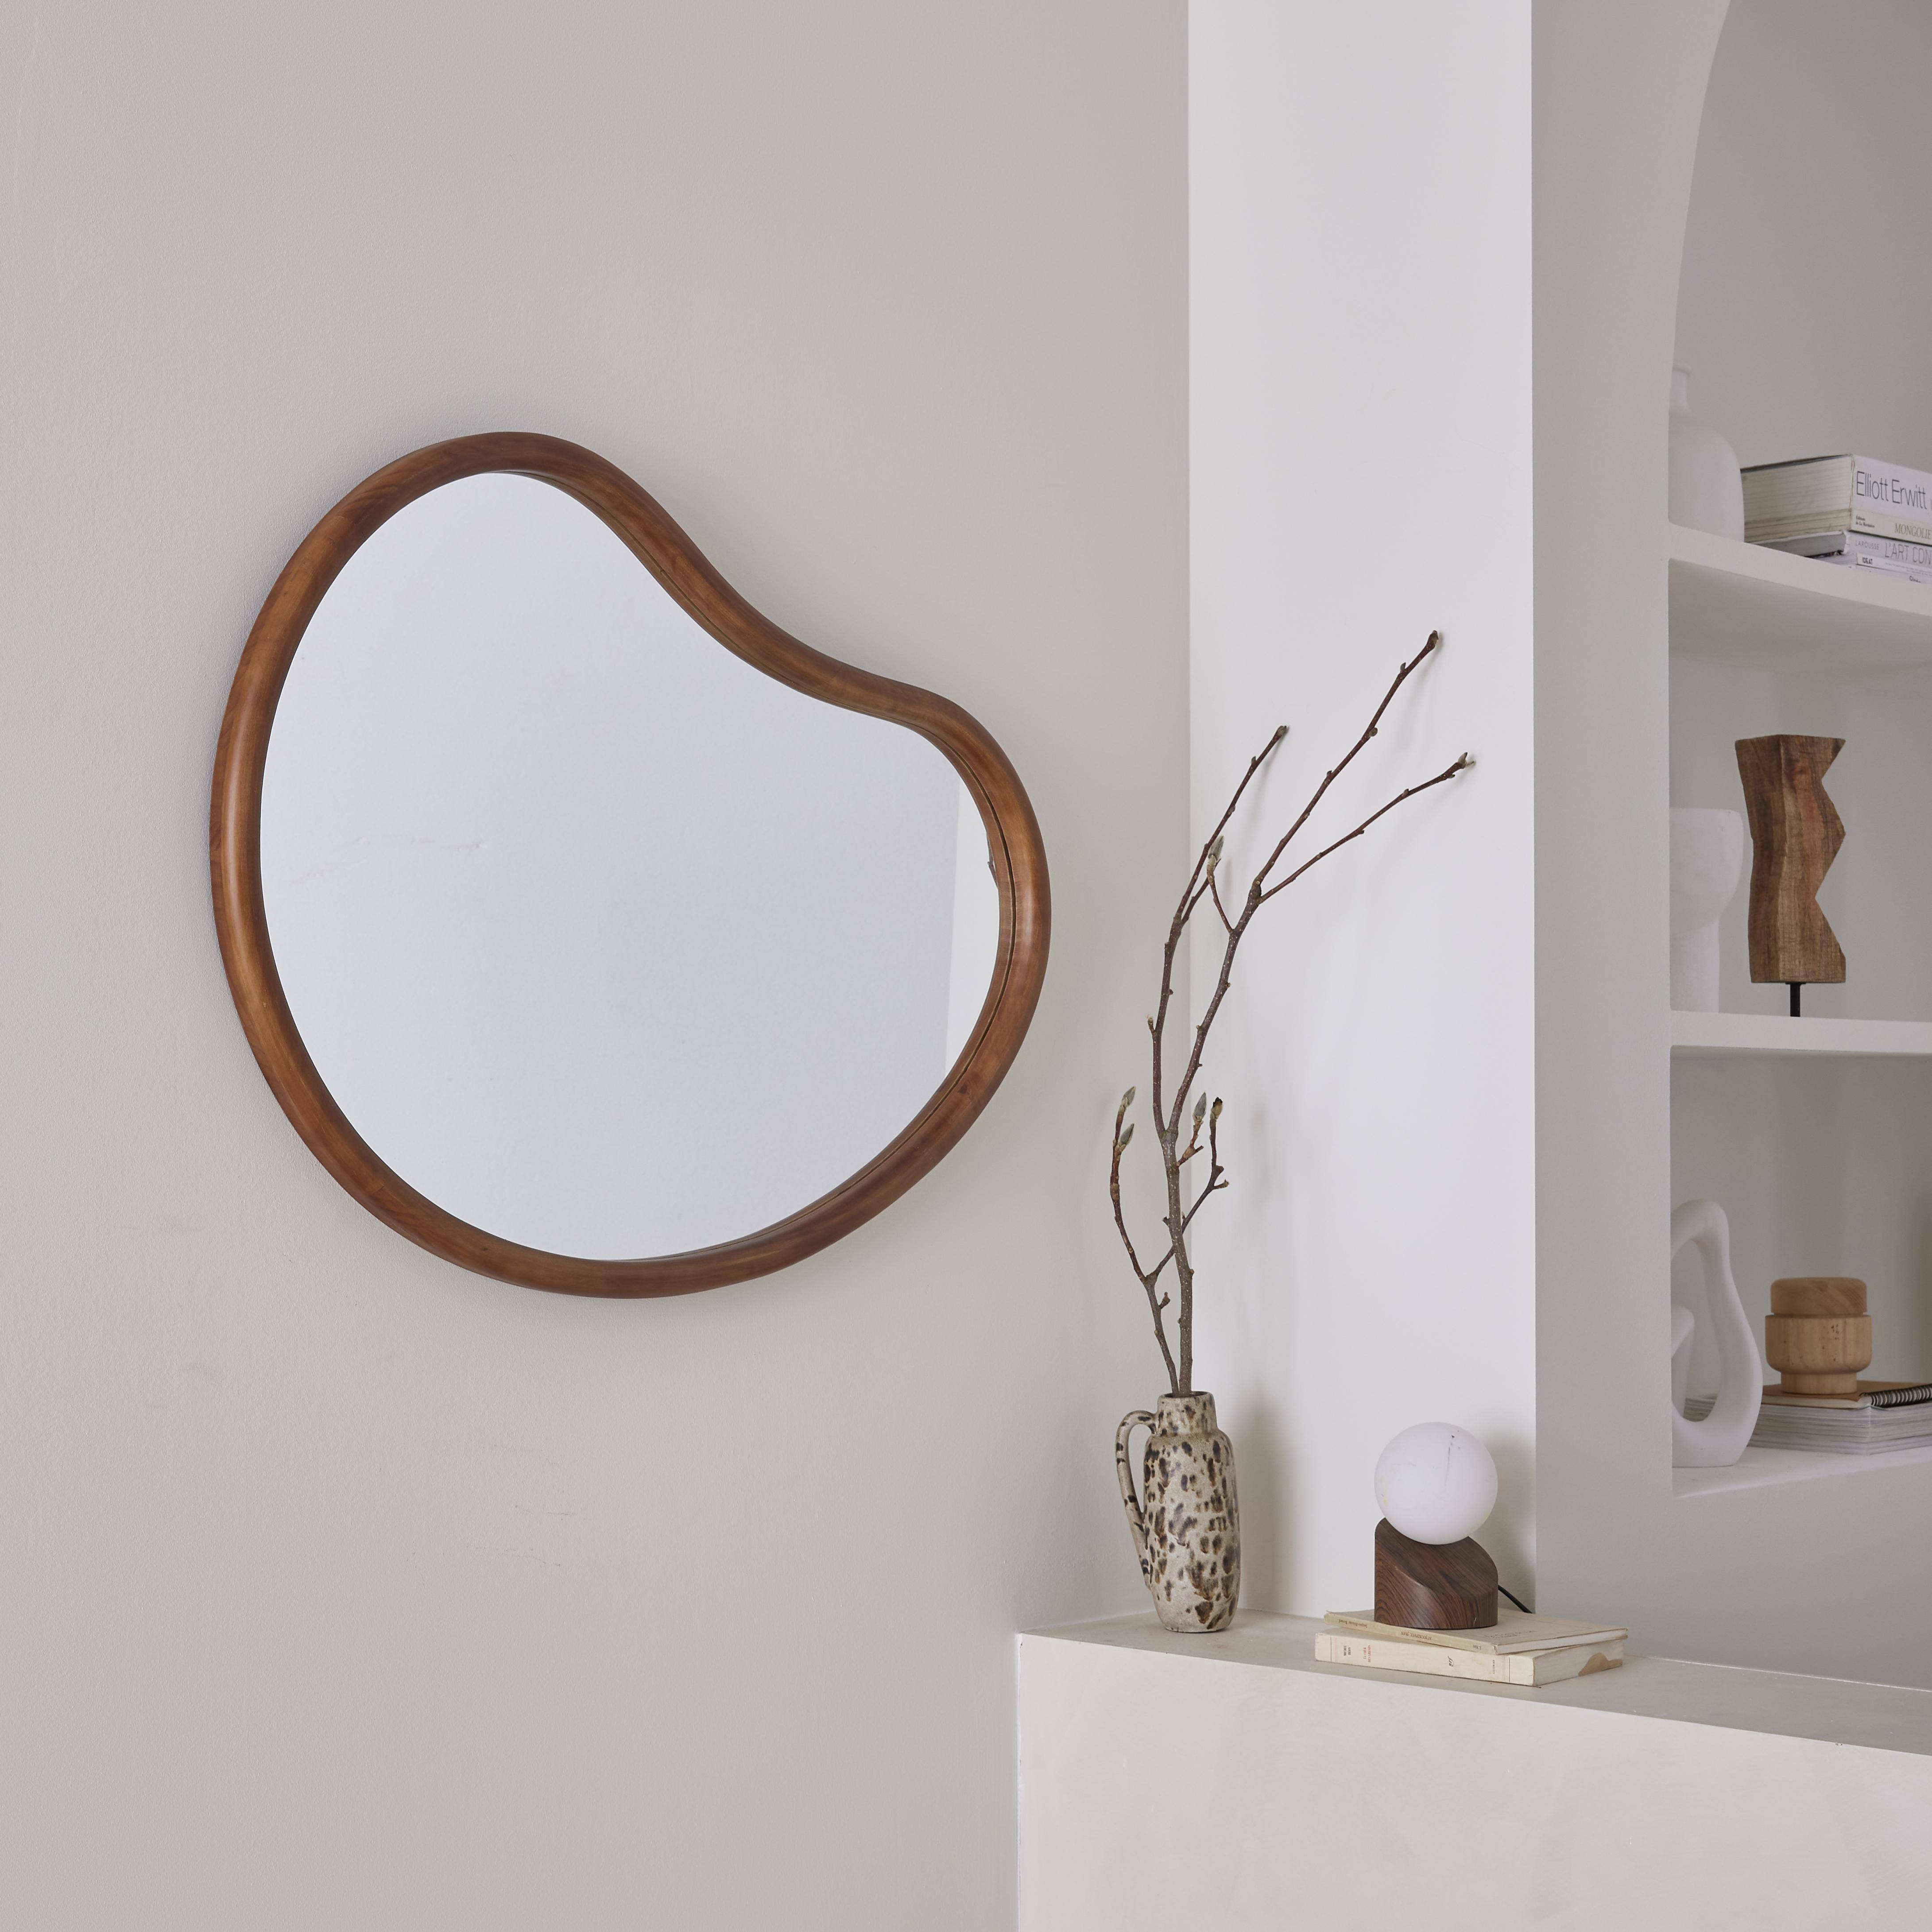 Miroir organique en bois de sapin 85cm épaisseur 3cm coloris noyer idéal entrée, chambre ou salle de bain,sweeek,Photo2